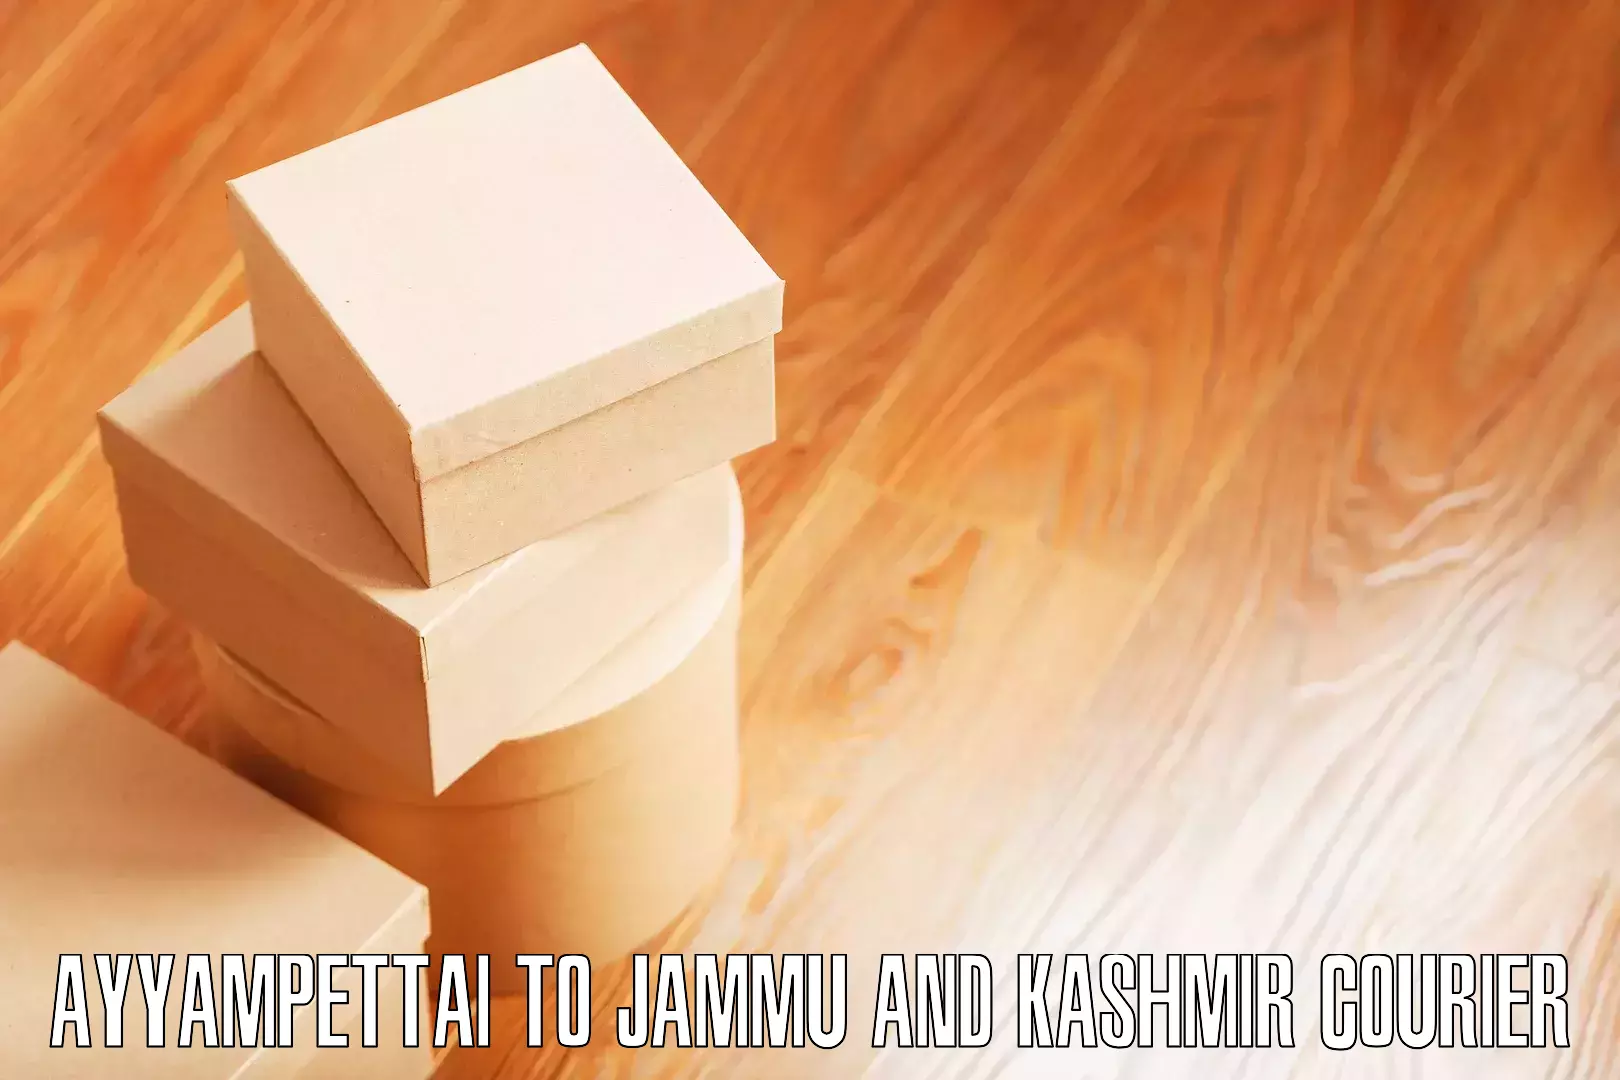 Professional moving company Ayyampettai to Jammu and Kashmir